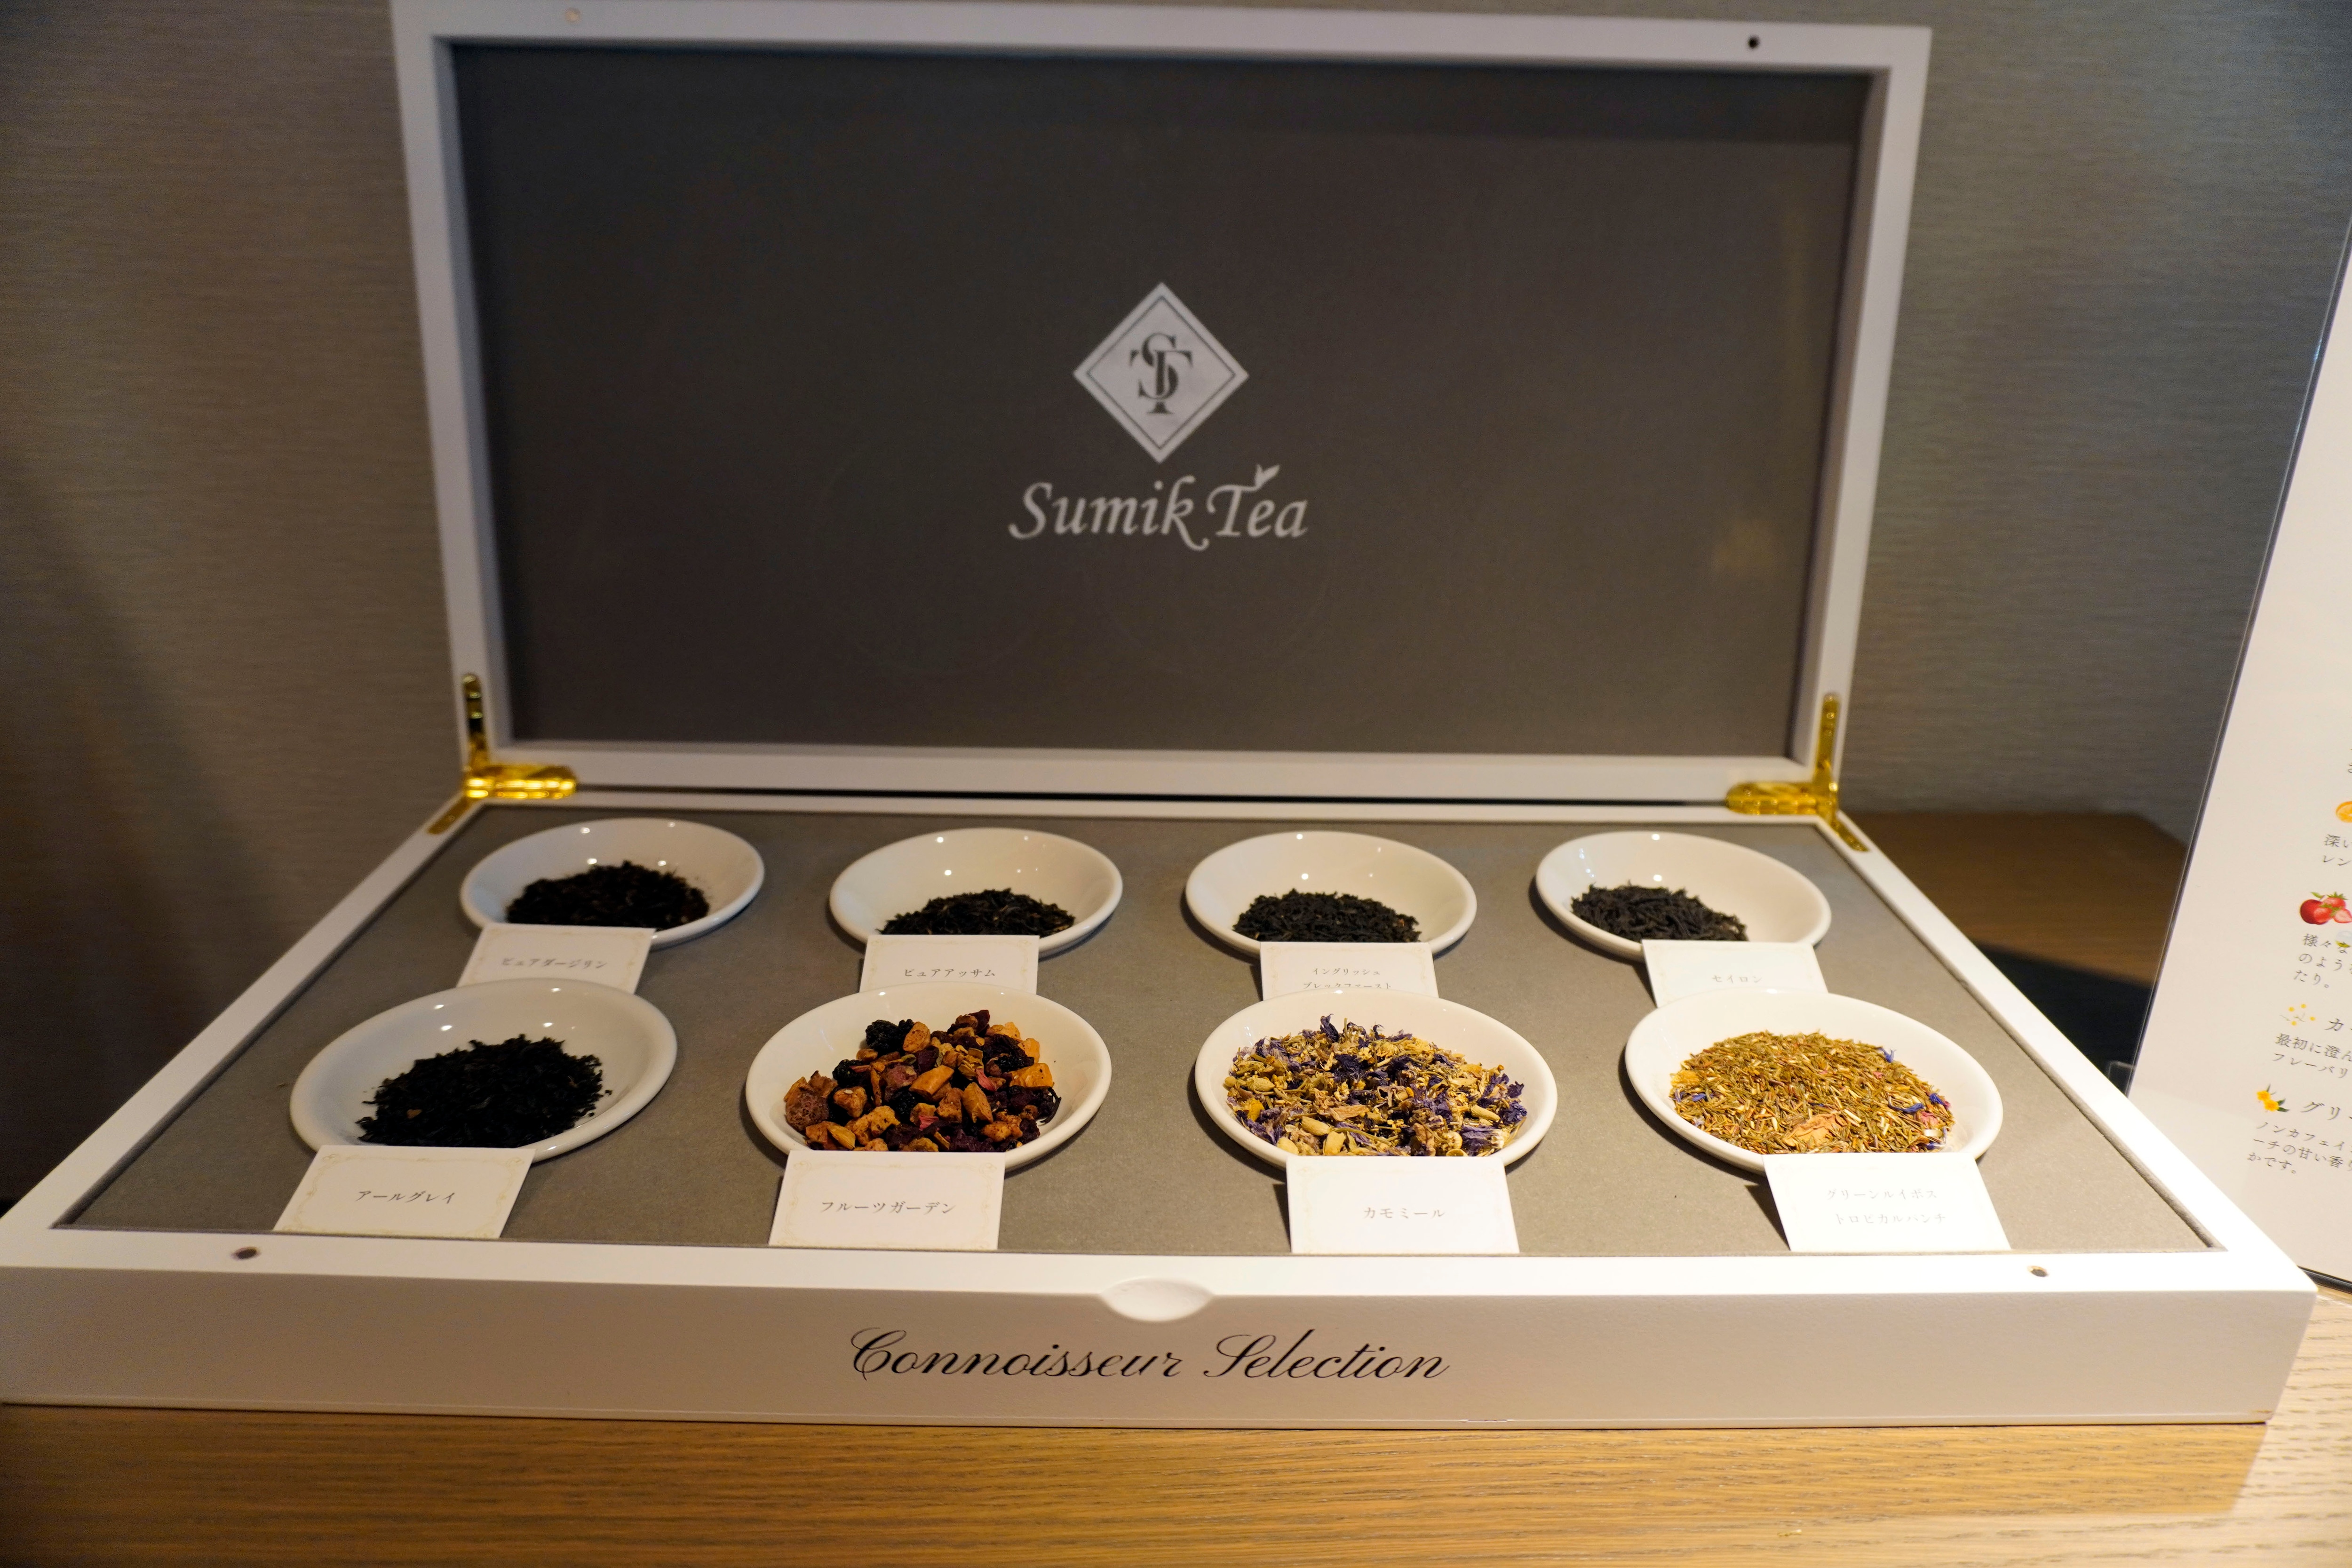 ゲストラウンジ刻で提供されているSumik Teaの紅茶。